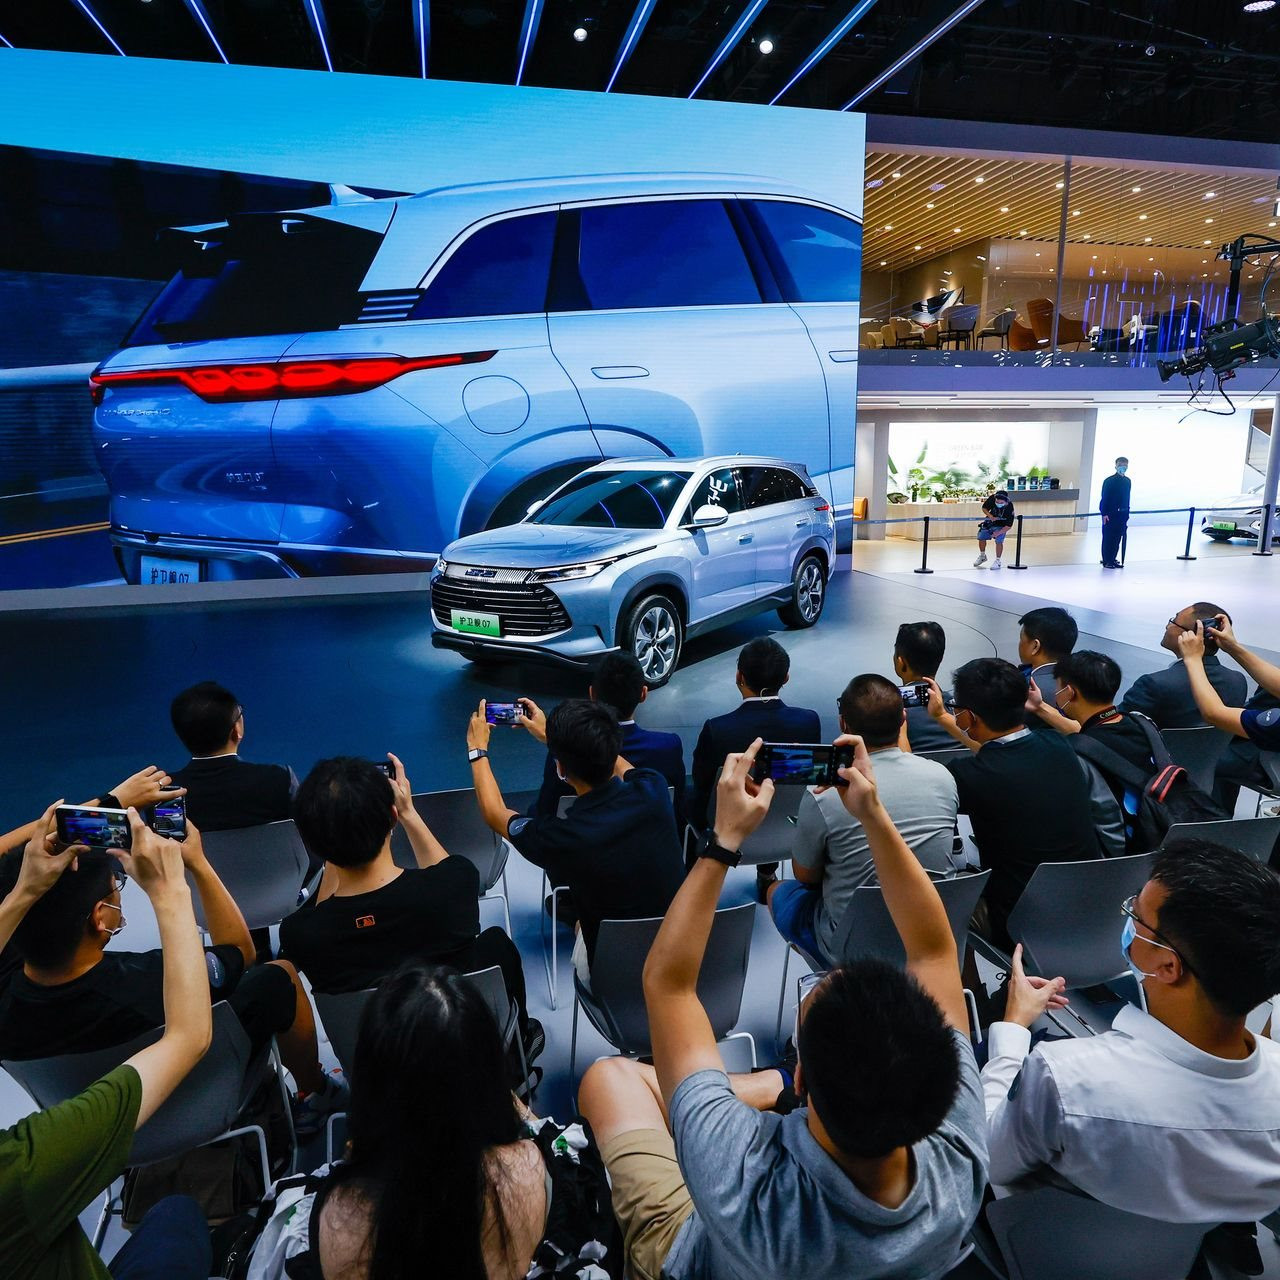 Trung Quốc rung chuyển ngành công nghiệp xe hơi: Vượt mặt từ Mỹ đến Nhật Bản, cạnh tranh khốc liệt chỉ sau vài giờ đối thủ ra mắt sản phẩm mới 